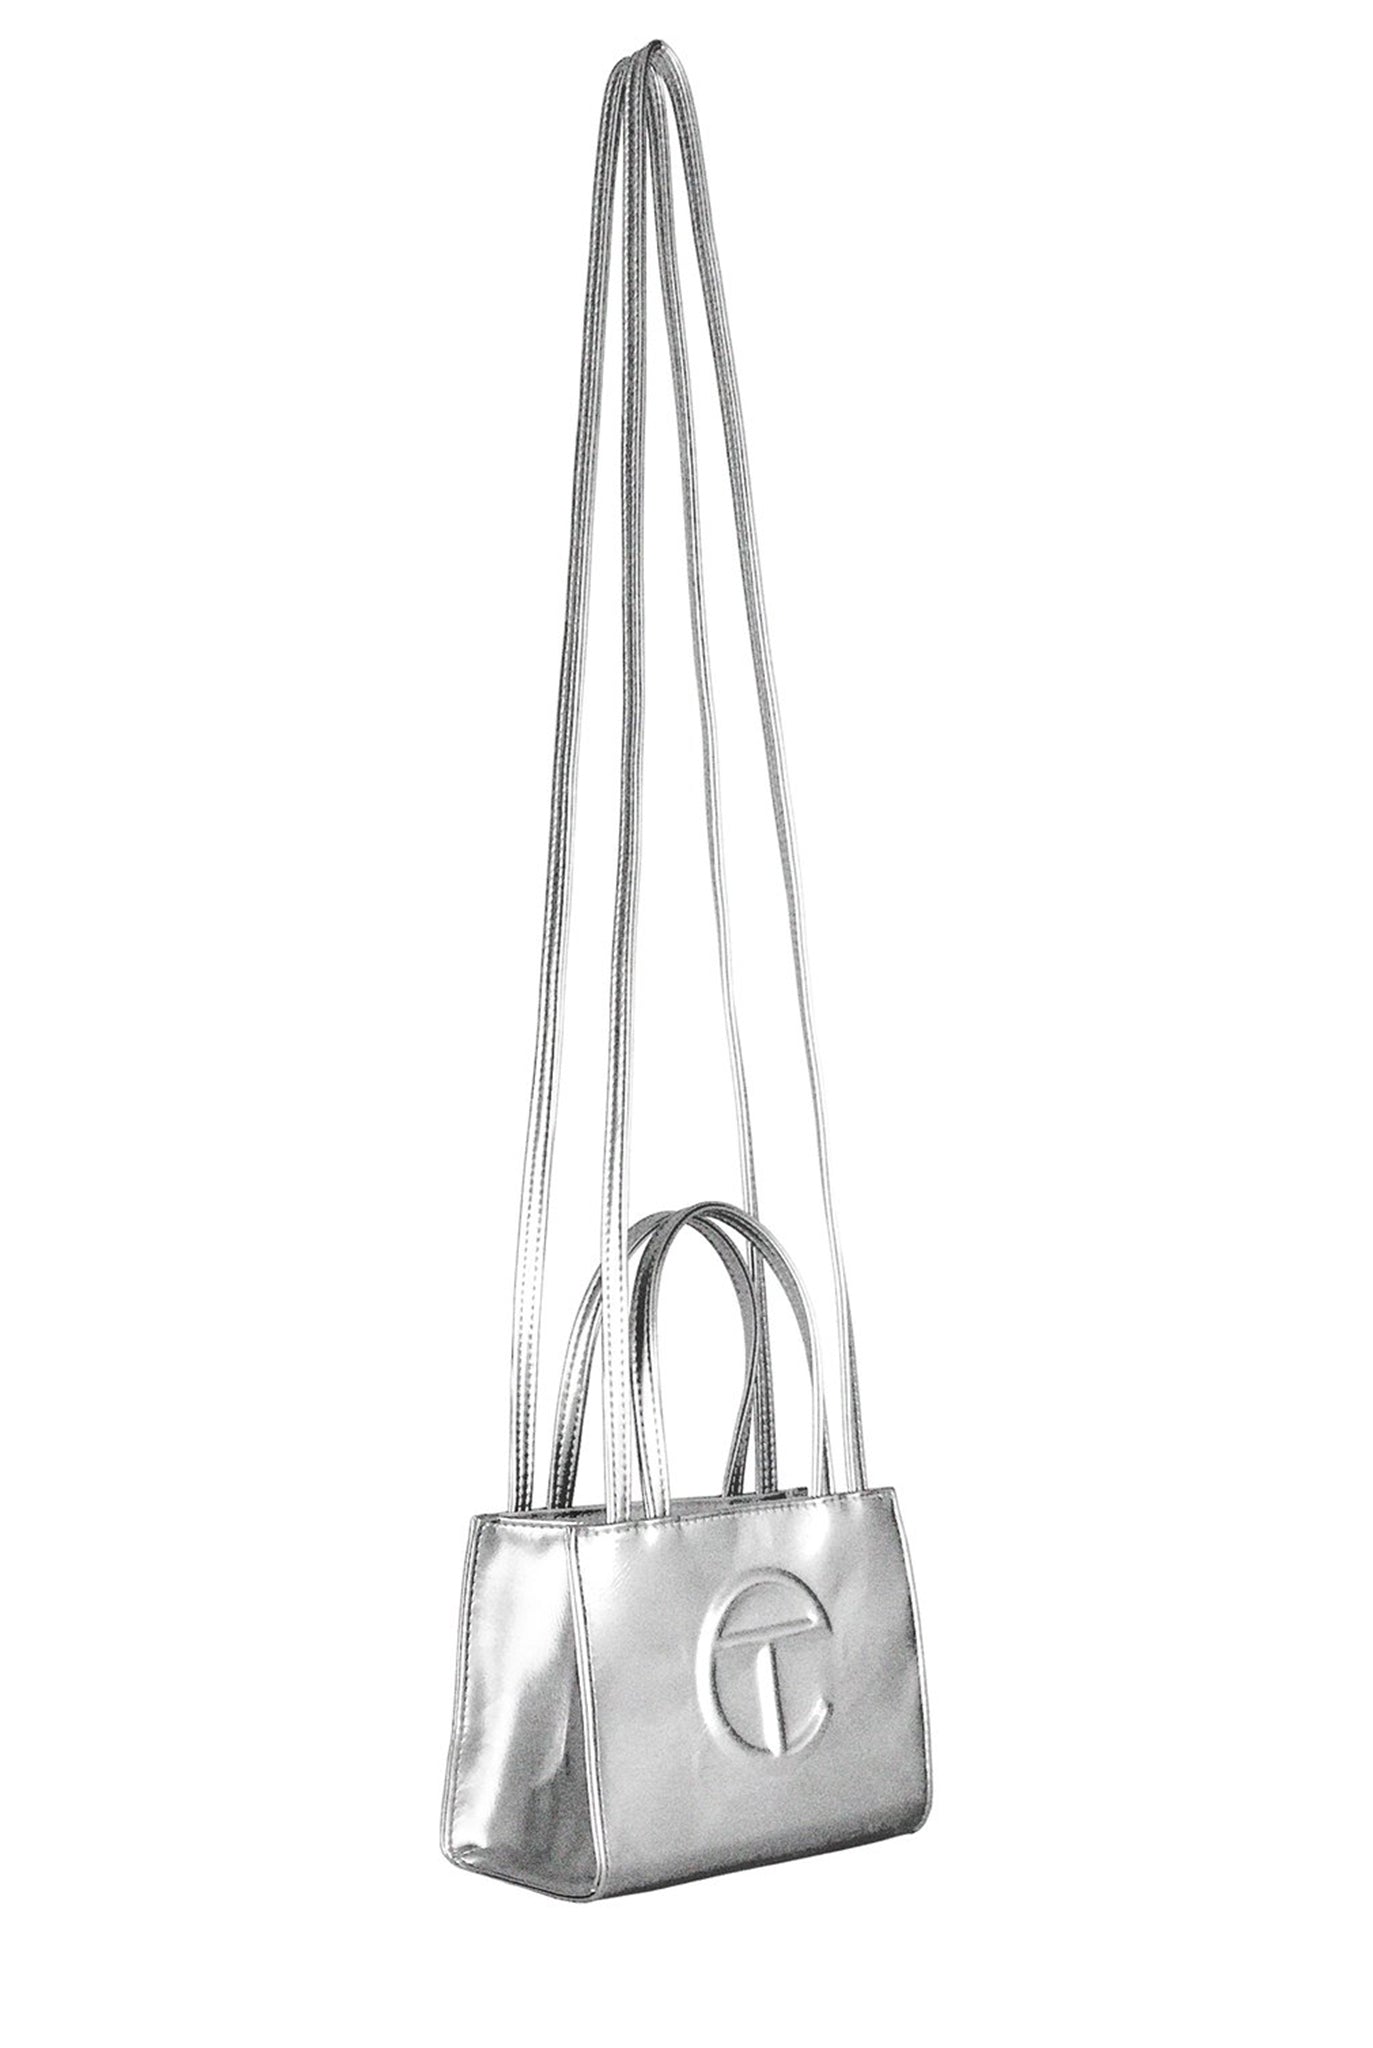 Telfar Small Shopping Bag, Silver – SOOP SOOP